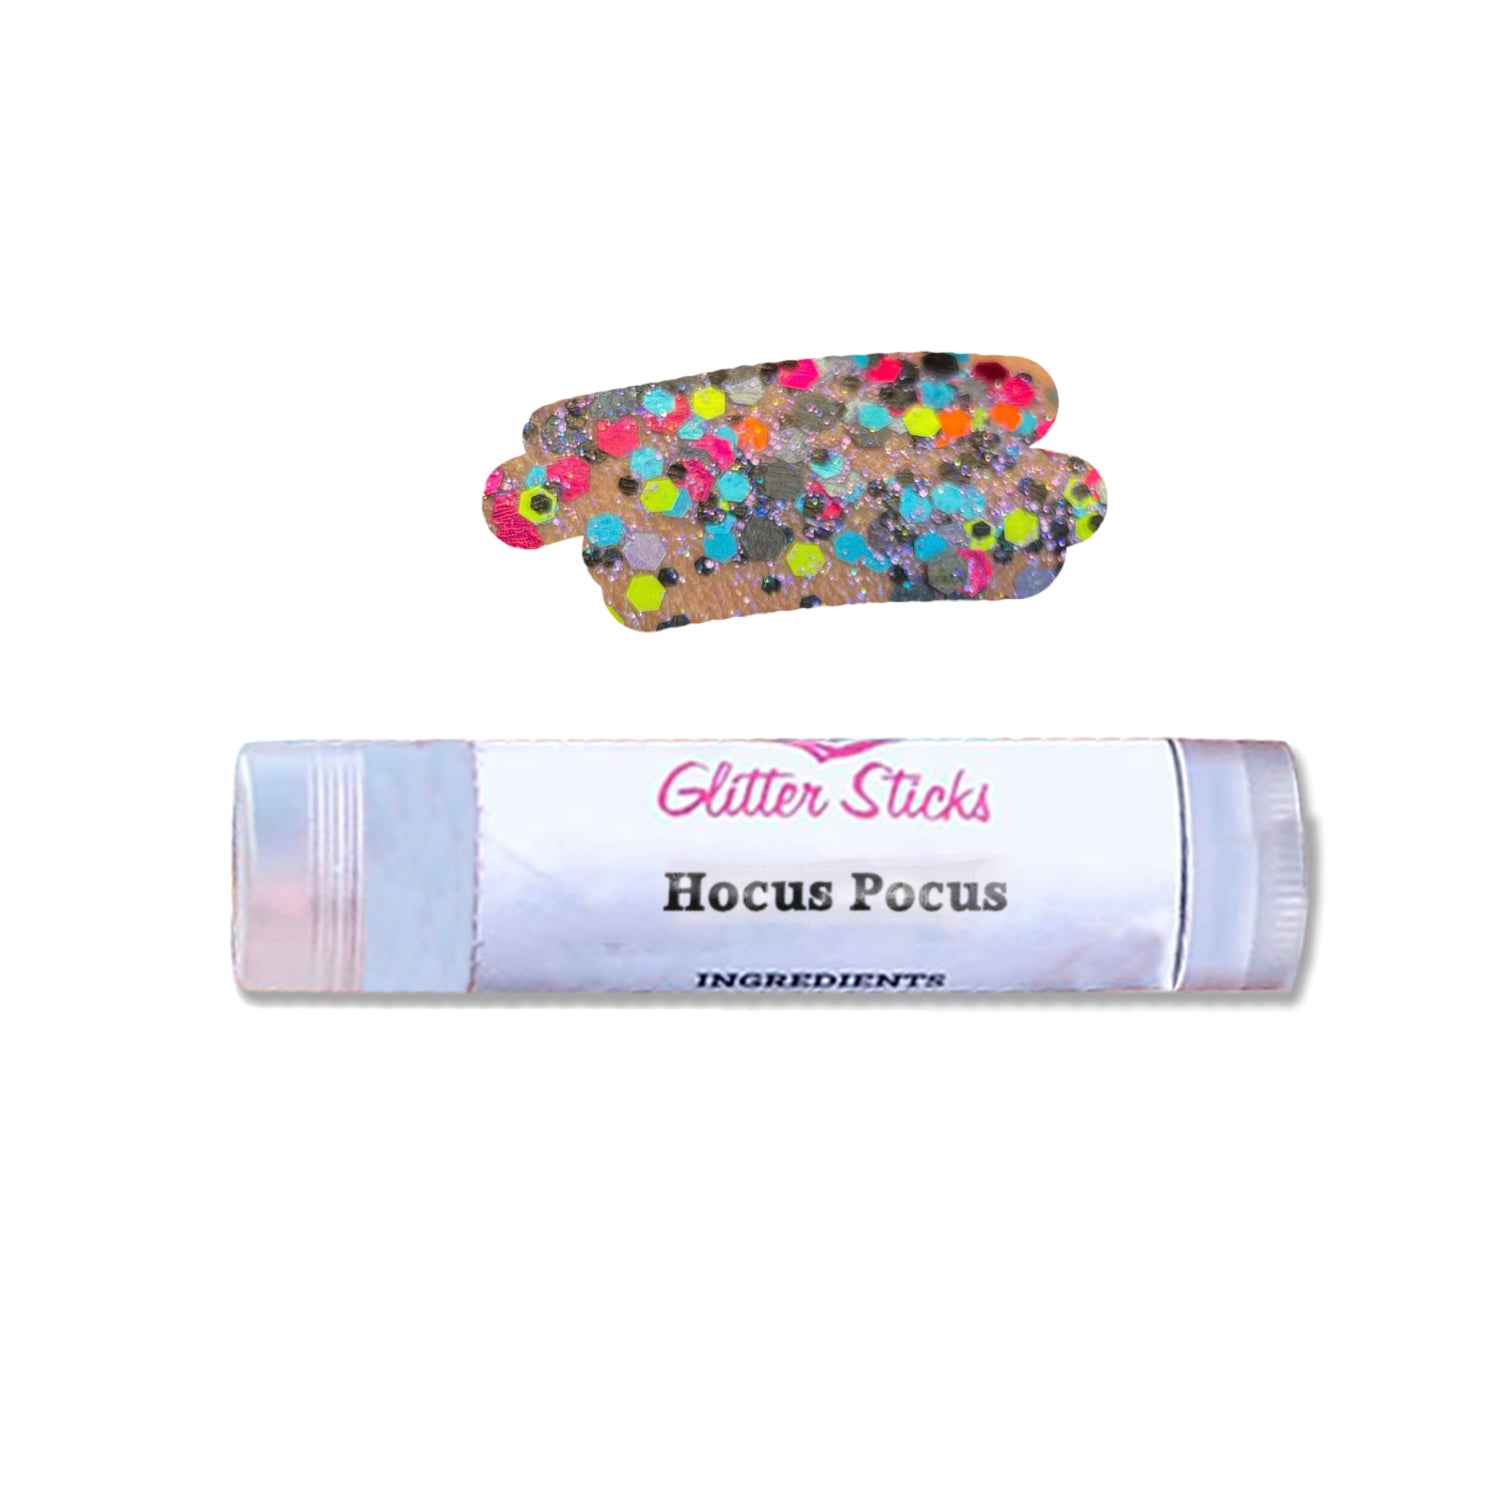 Creative Faces Glitter Stick - Hocus Pocus (3.5 gm/4.5 ml)